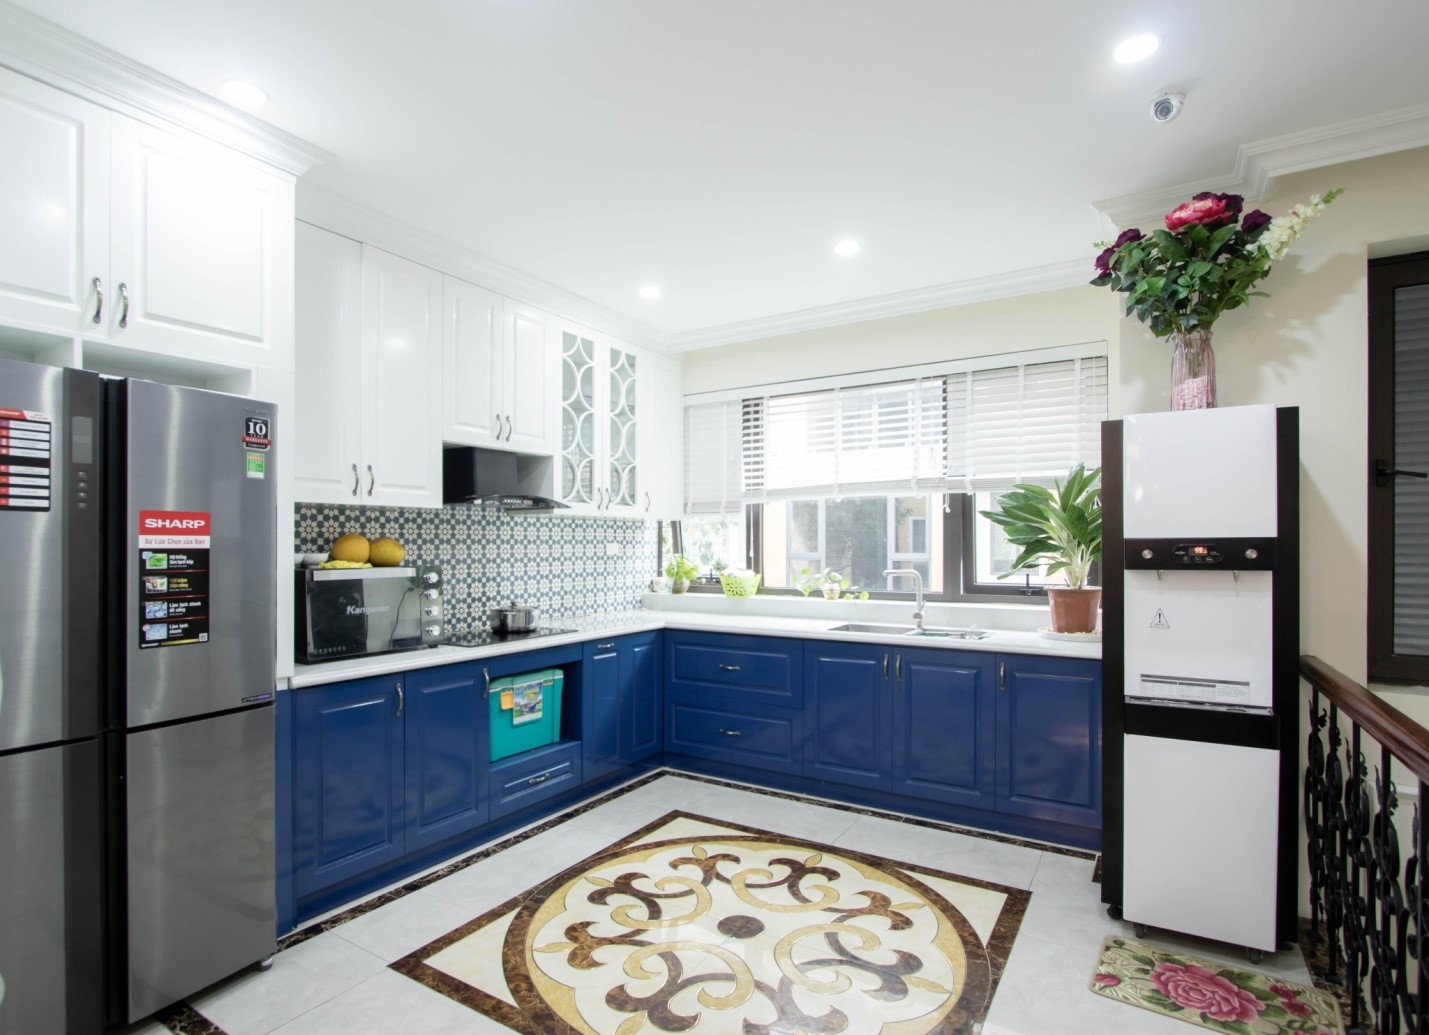 Phòng bếp chữ L thoáng rộng với sự kết hợp hoàn hảo giữa sắc xanh dương và trắng tinh khôi.